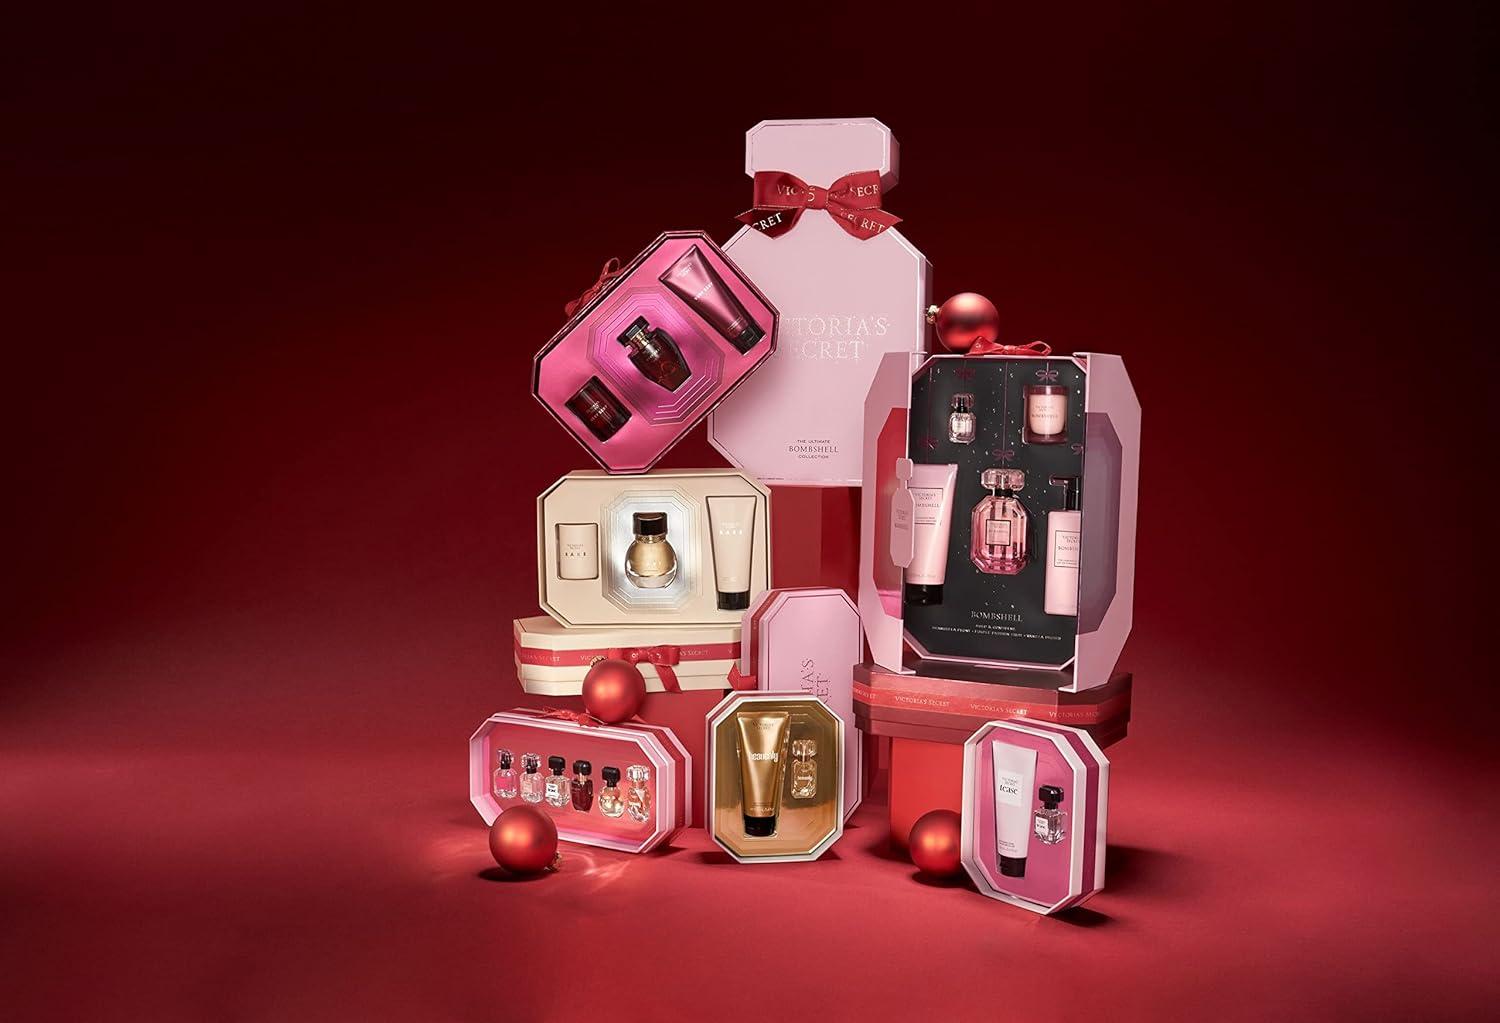 Victoria's Secret Eau de Parfum 5 Piece Gift Set